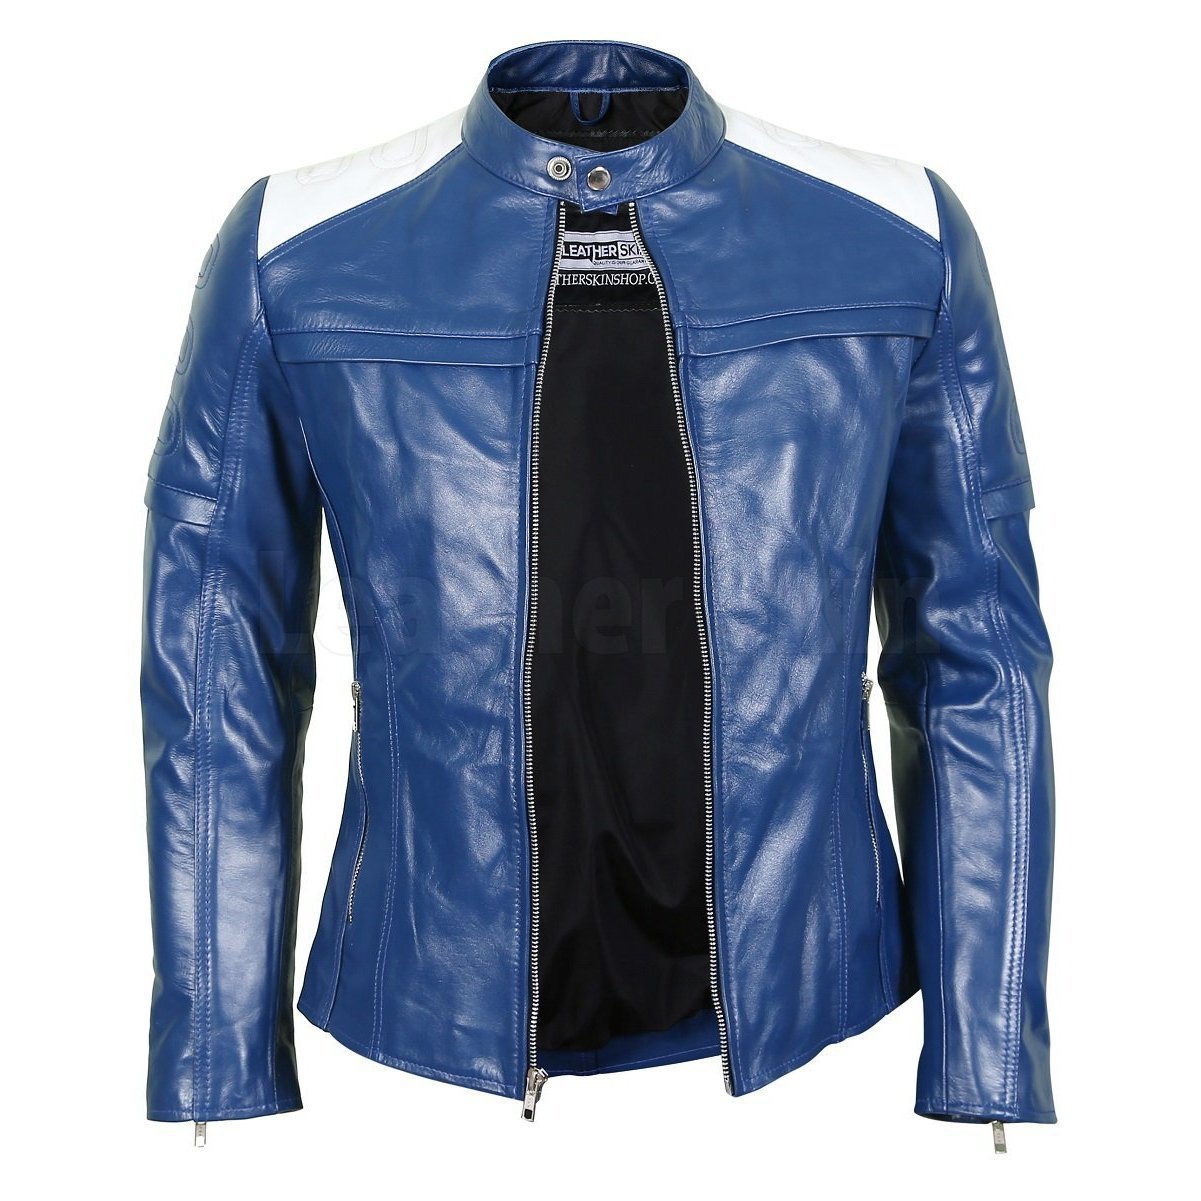 Women's Blue Leather Biker Jacket - Leather Skin Shop